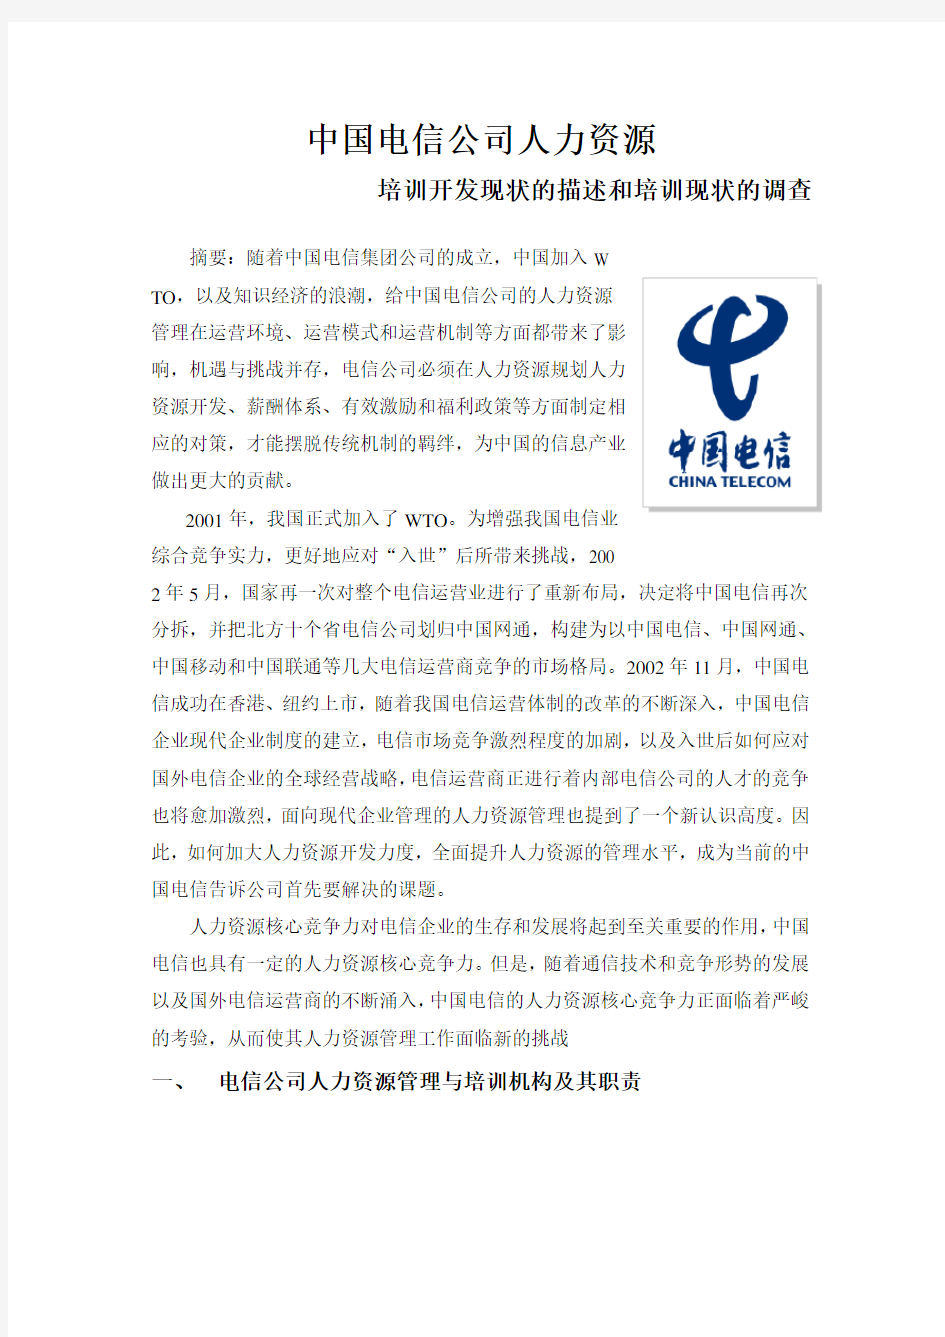 中国电信公司人力资源培训开发现状的描述和培训现状的调查